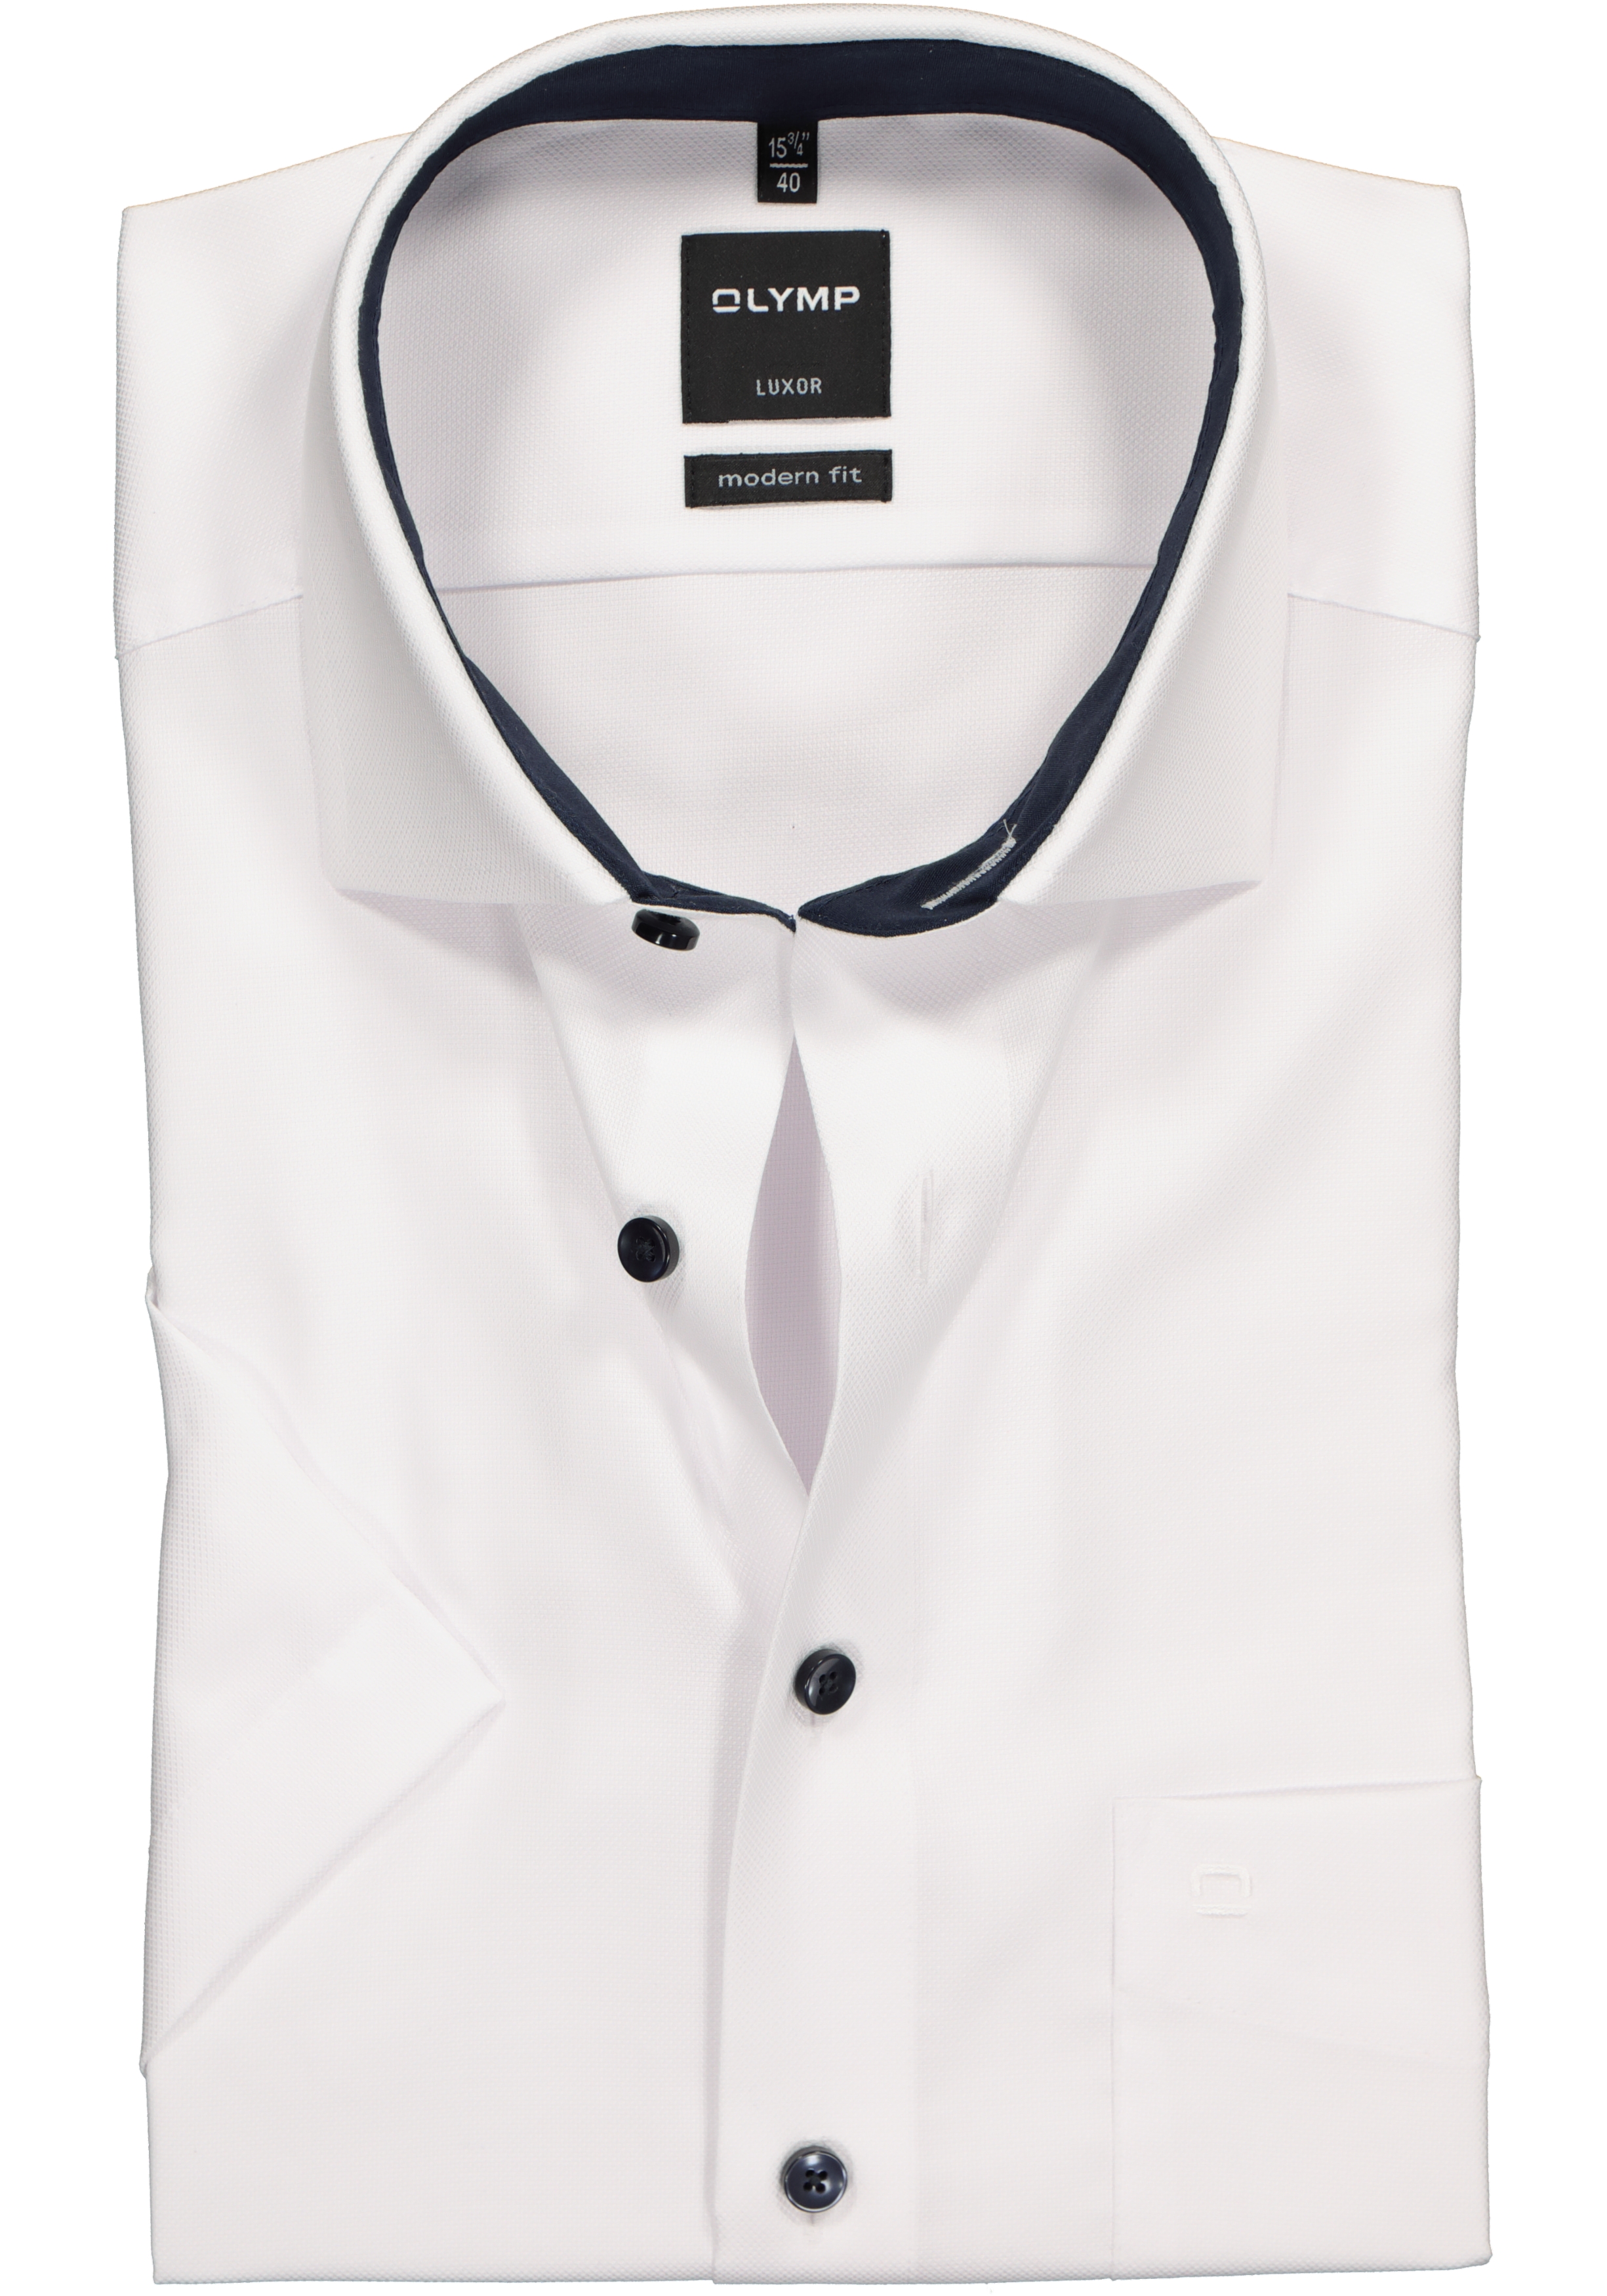 Leeuw onvergeeflijk draagbaar OLYMP Luxor modern fit overhemd, korte mouw, wit structuur (contrast) -  Shop de nieuwste voorjaarsmode